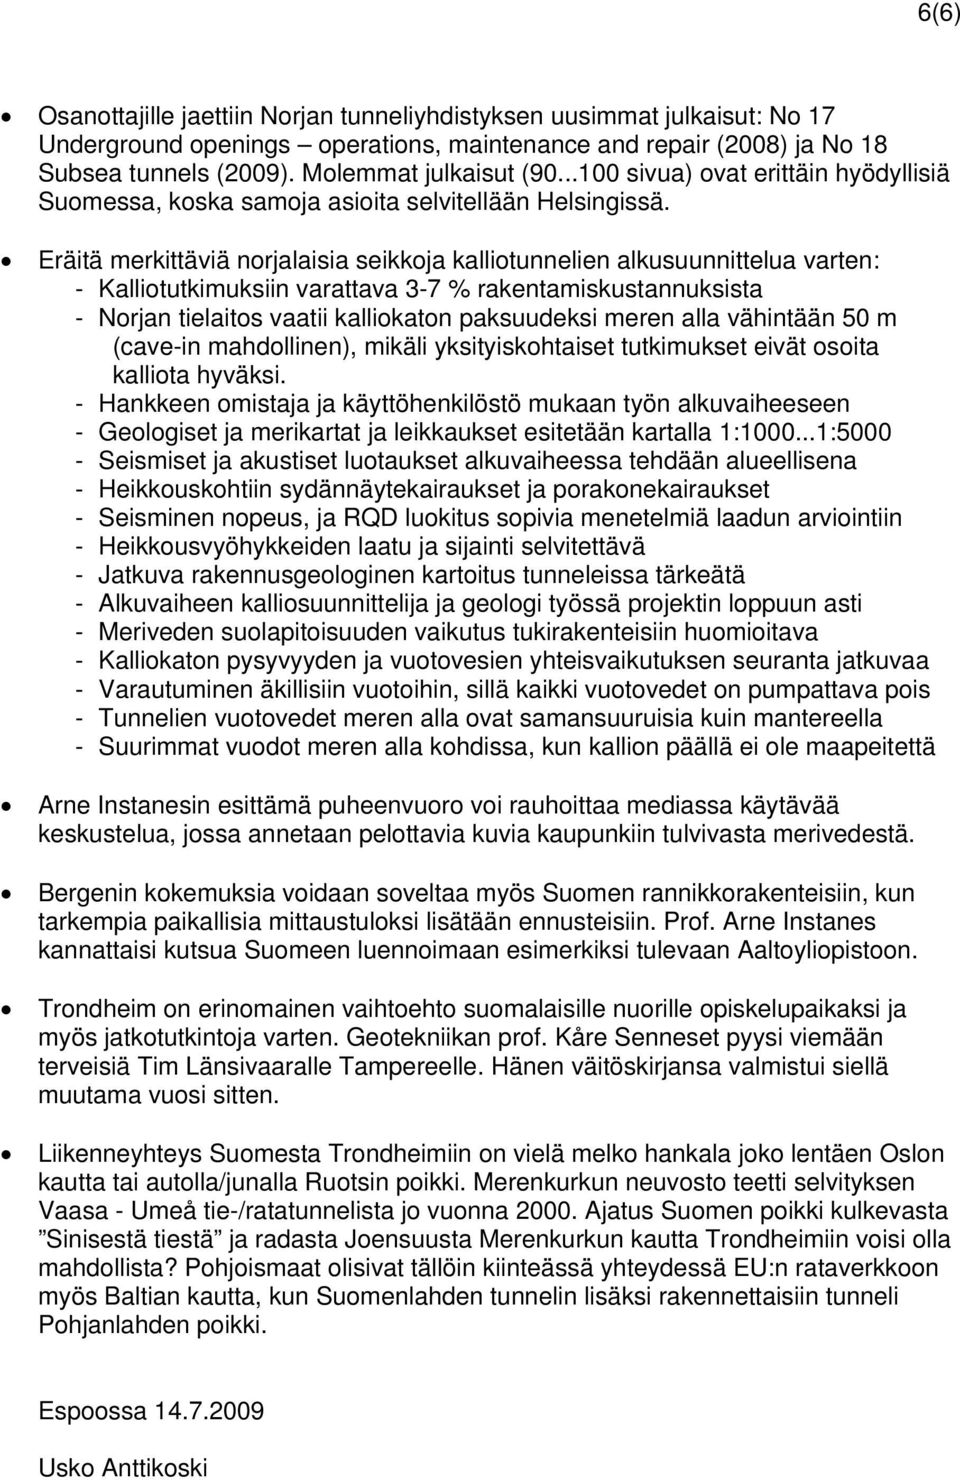 Eräitä merkittäviä norjalaisia seikkoja kalliotunnelien alkusuunnittelua varten: - Kalliotutkimuksiin varattava 3-7 % rakentamiskustannuksista - Norjan tielaitos vaatii kalliokaton paksuudeksi meren